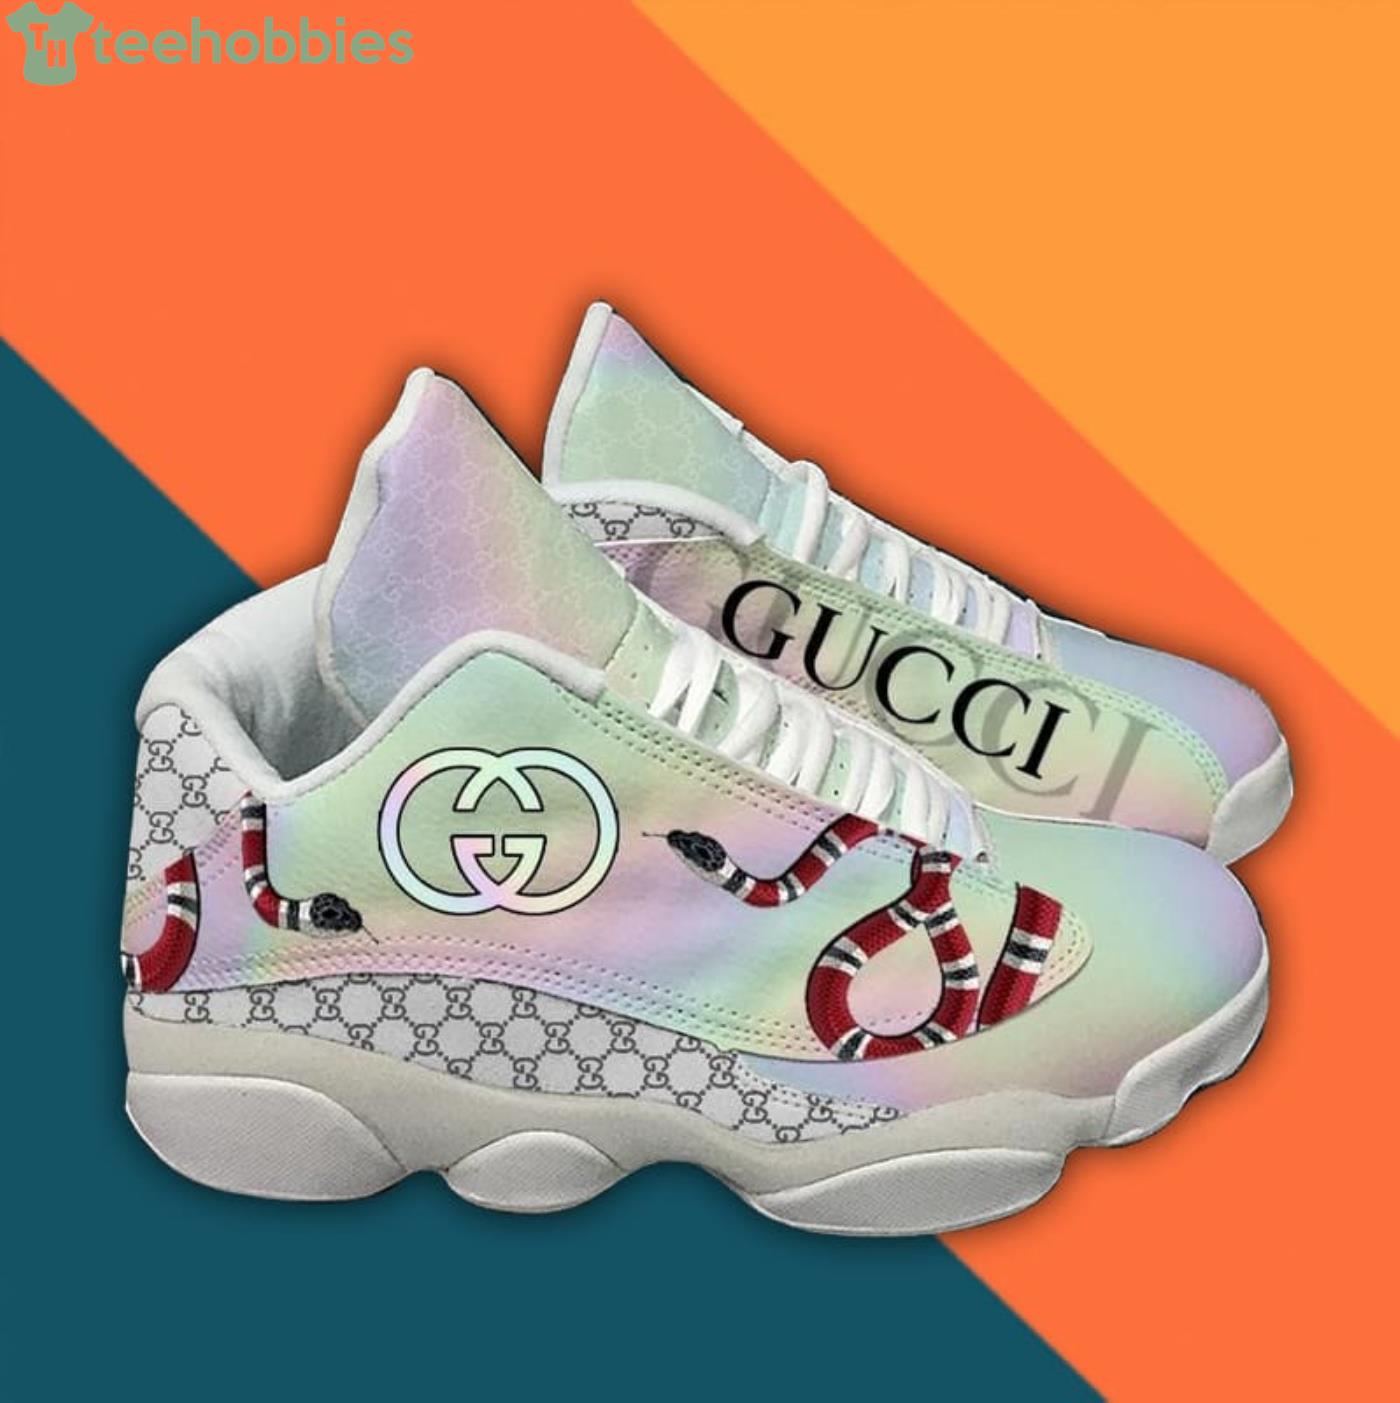 Custom Air Jordan 1 Goes Full Gucci